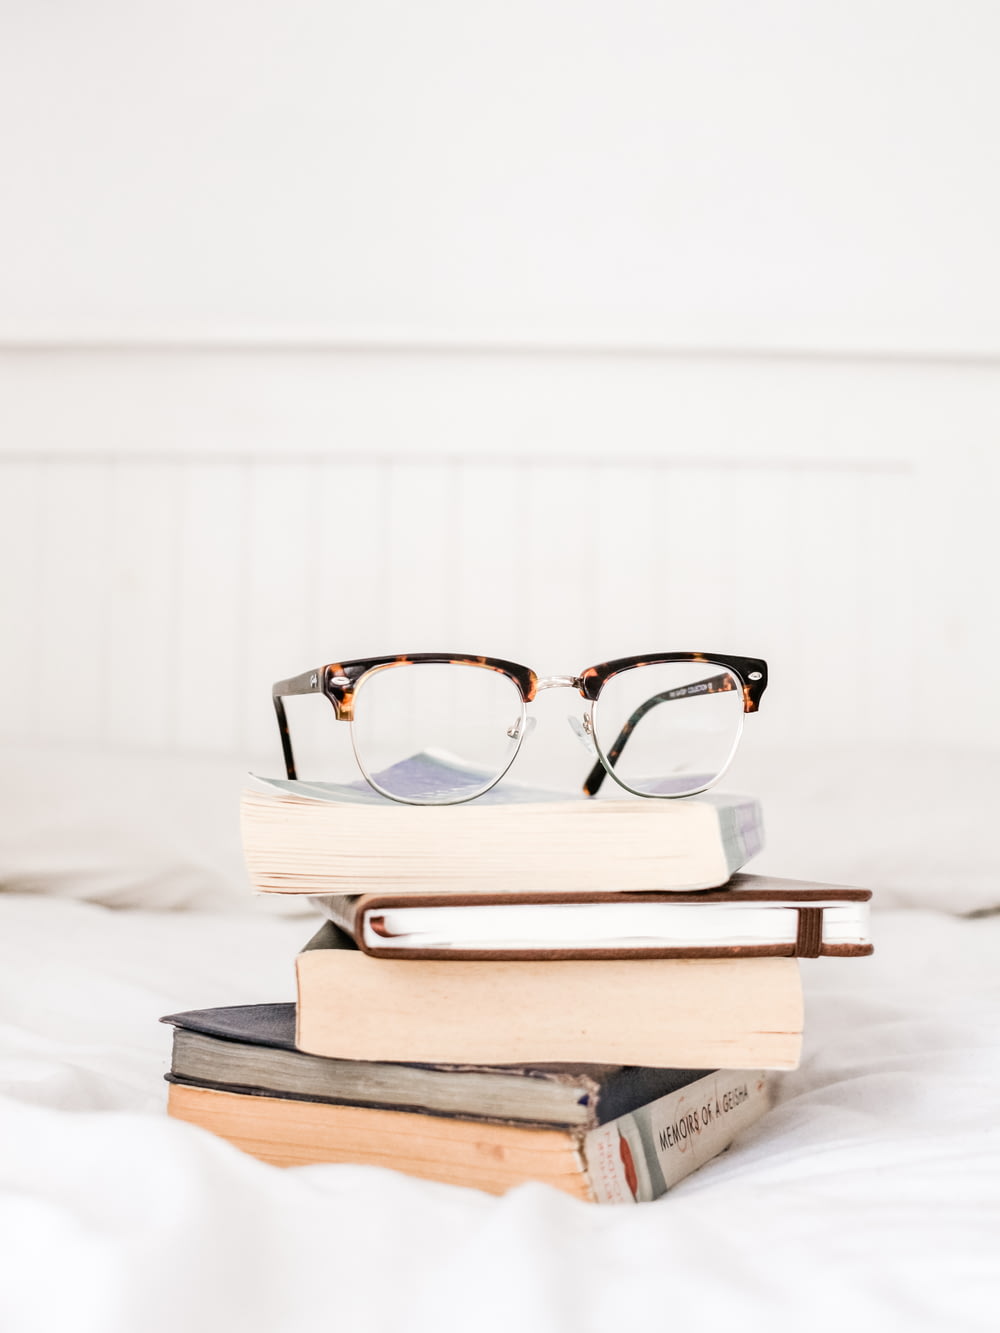 eyeglasses on pile books